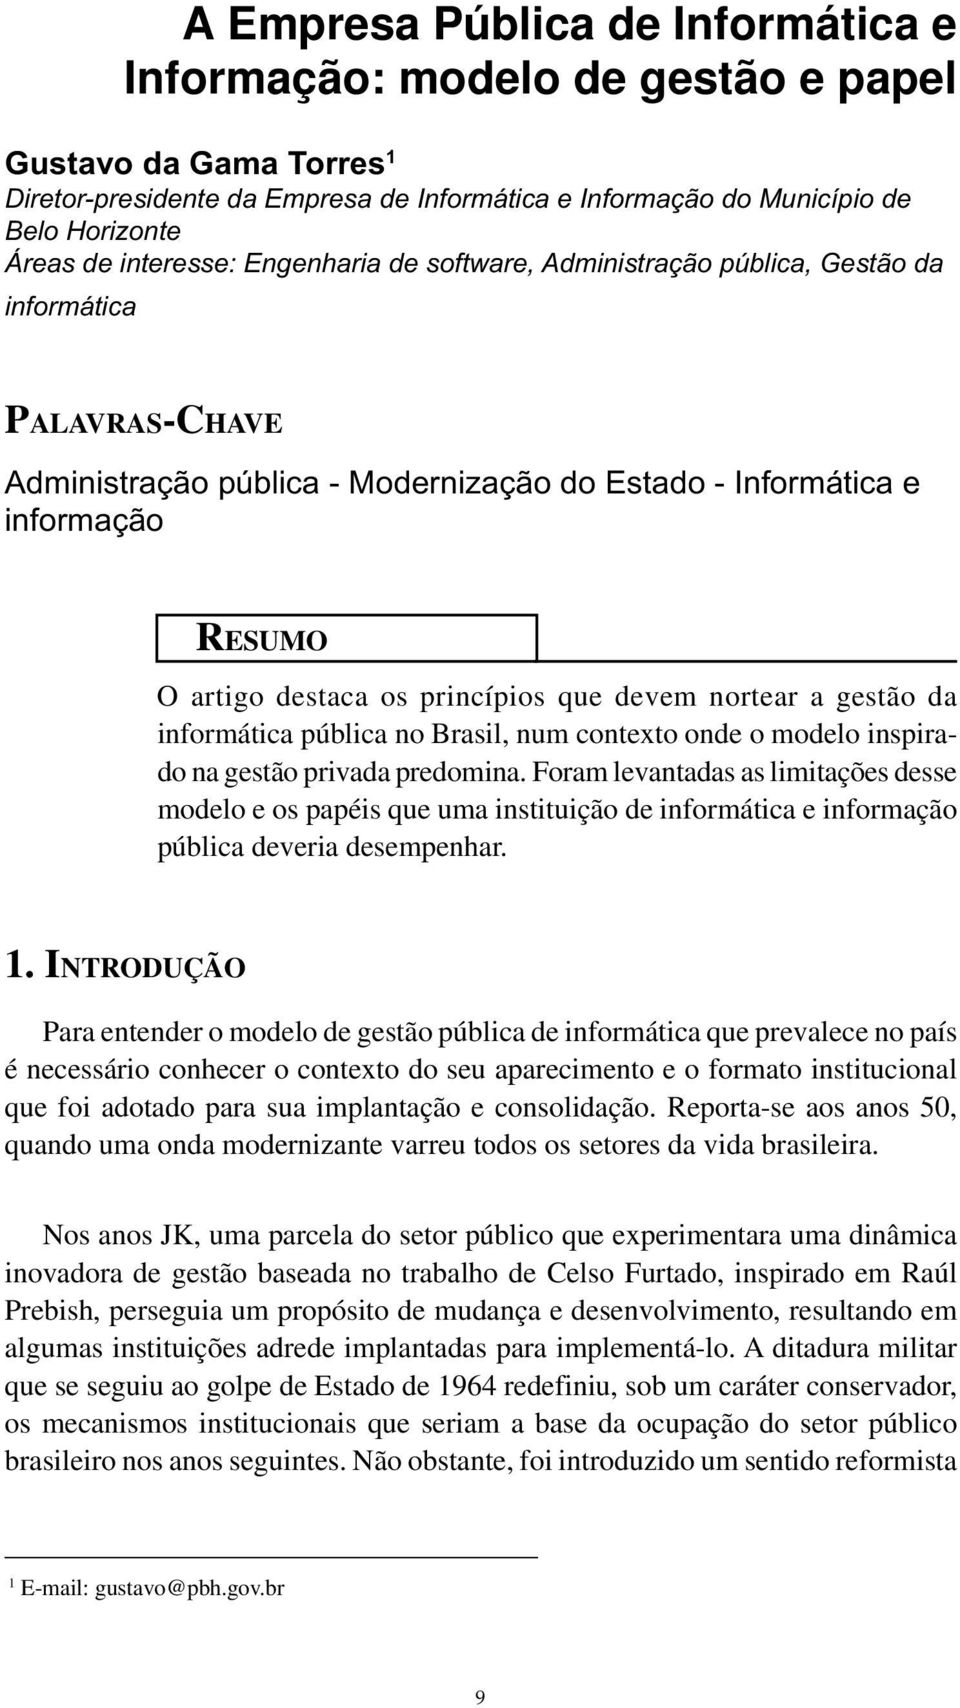 princípios que devem nortear a gestão da informática pública no Brasil, num contexto onde o modelo inspirado na gestão privada predomina.